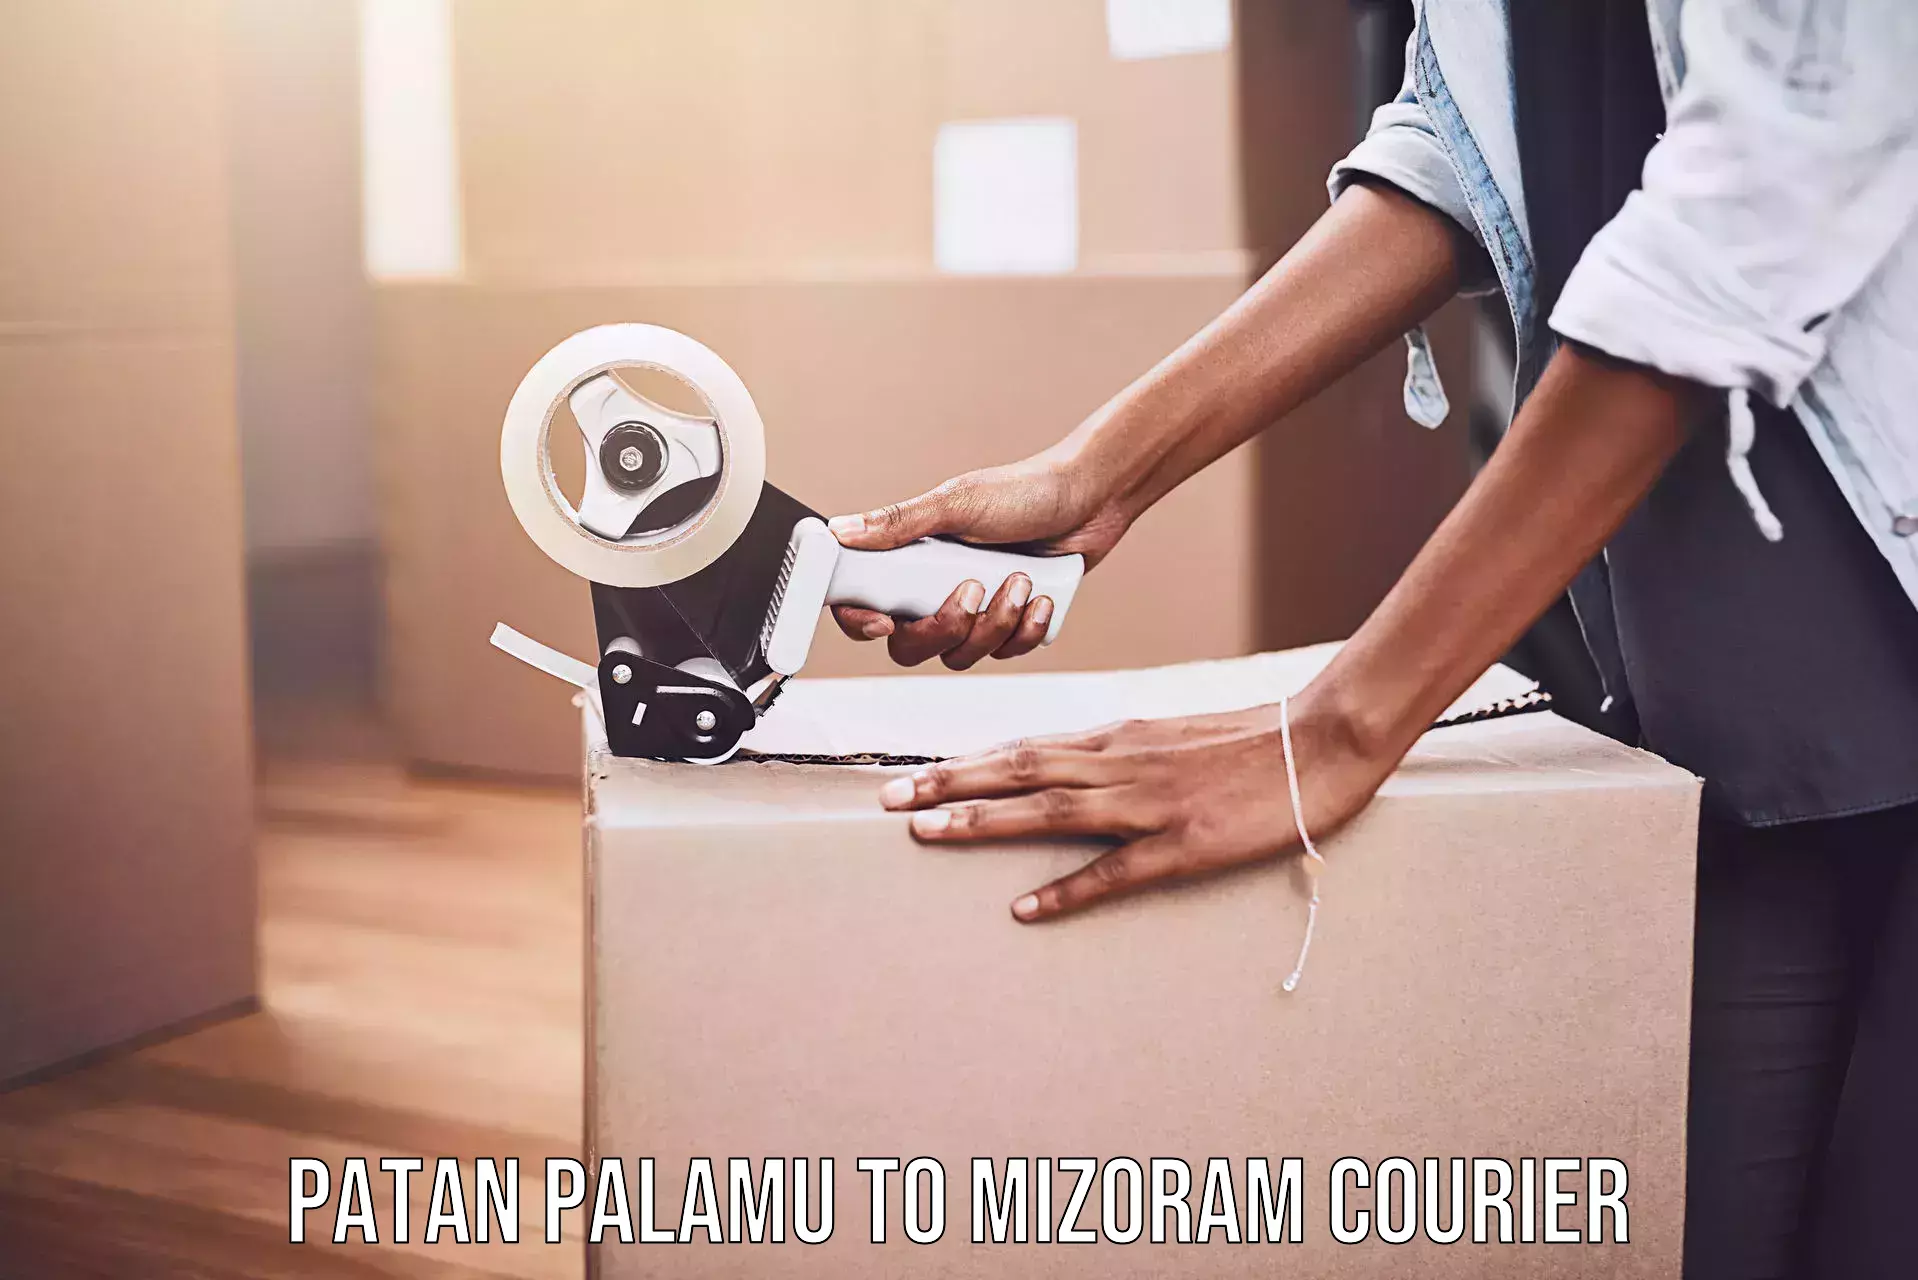 Personalized courier experiences Patan Palamu to Mizoram